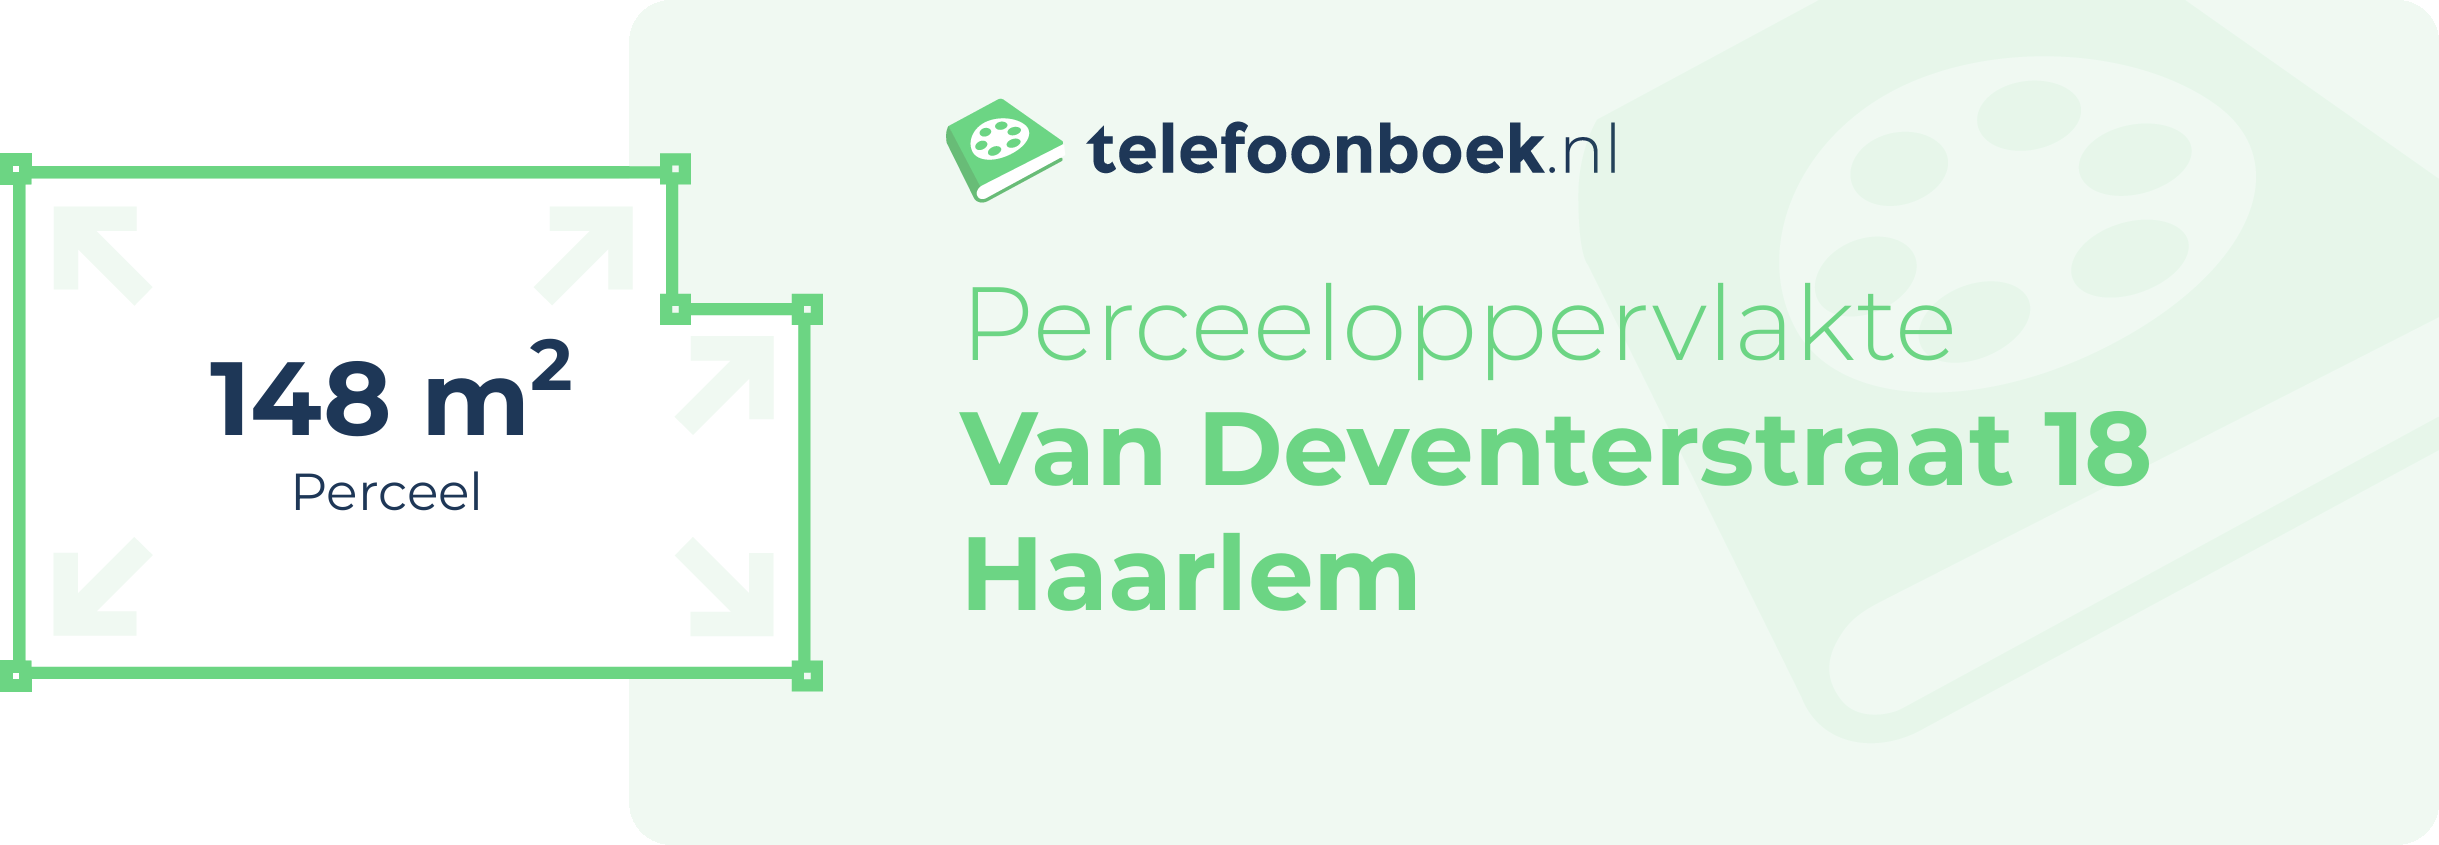 Perceeloppervlakte Van Deventerstraat 18 Haarlem